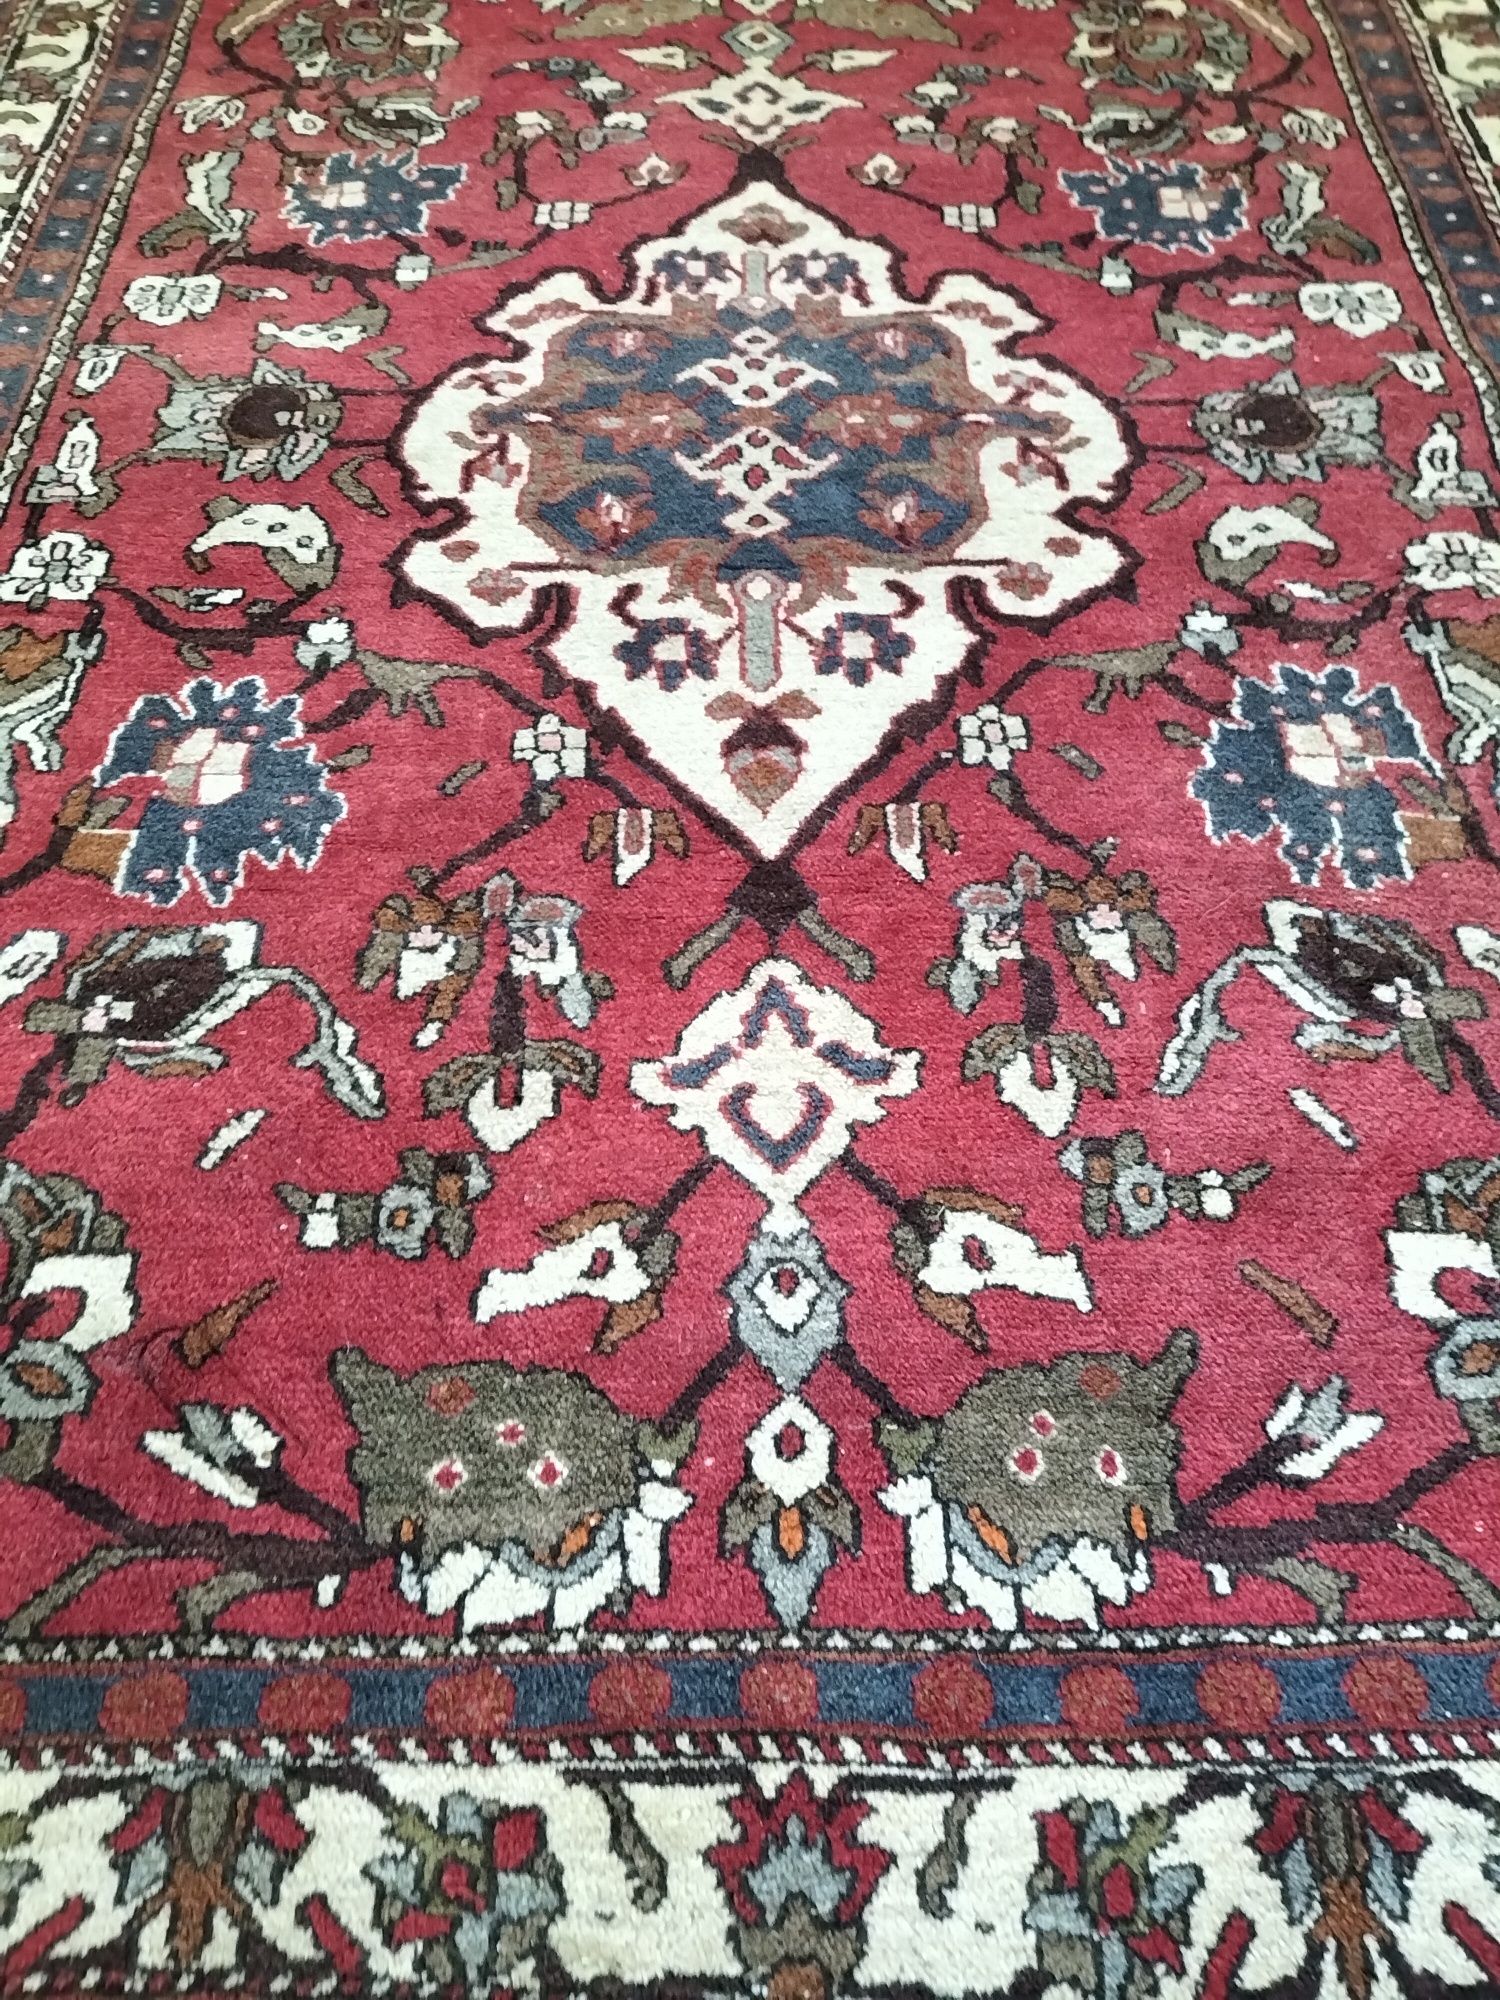 Irański ręcznie tkany wełniany dywan Karabagh 150x190cm nr 1199